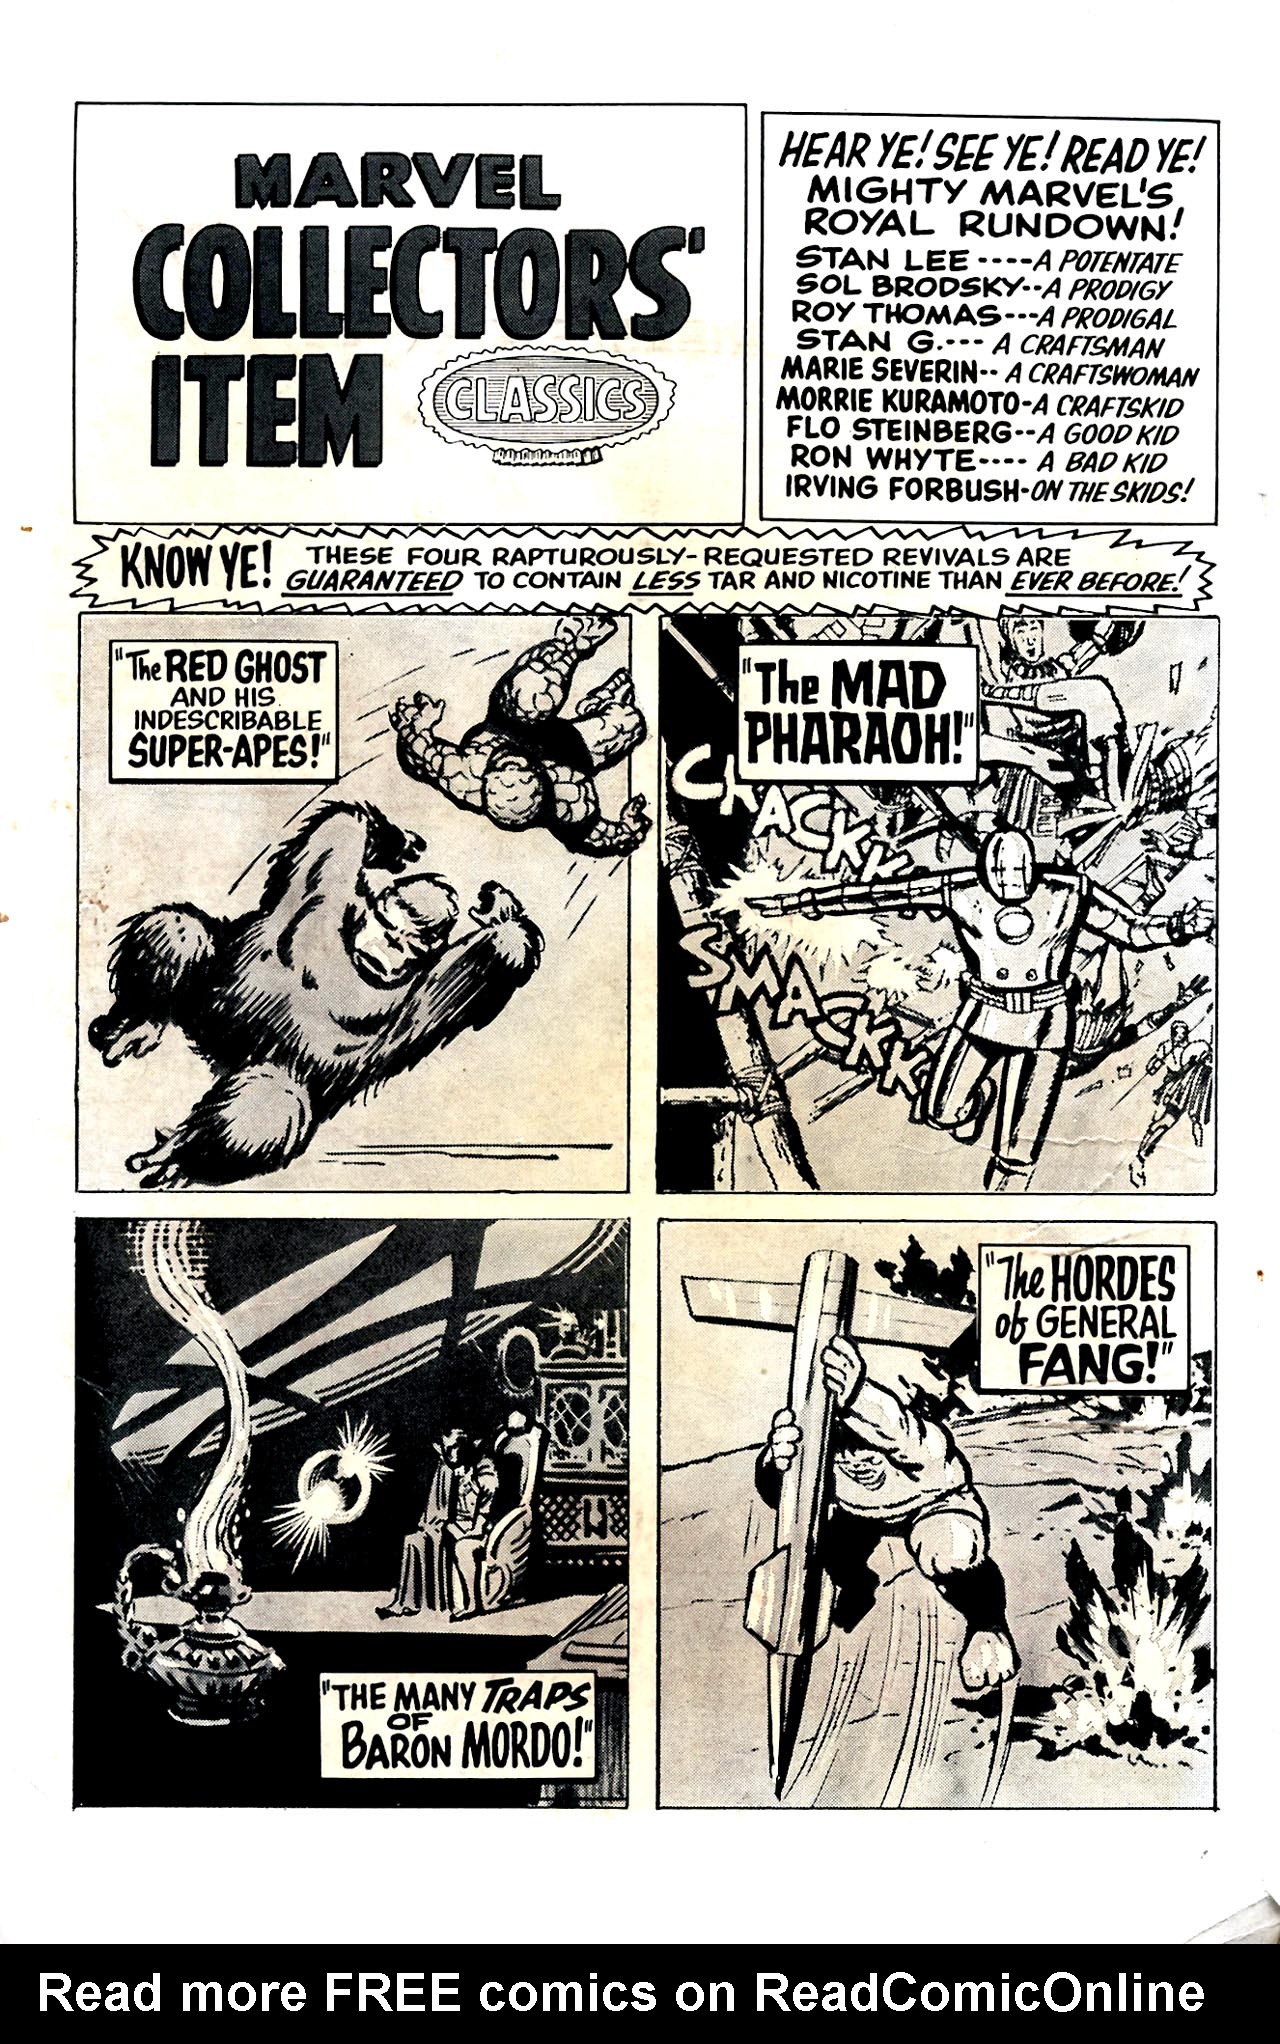 Read online Marvel Collectors' Item Classics comic -  Issue #7 - 2